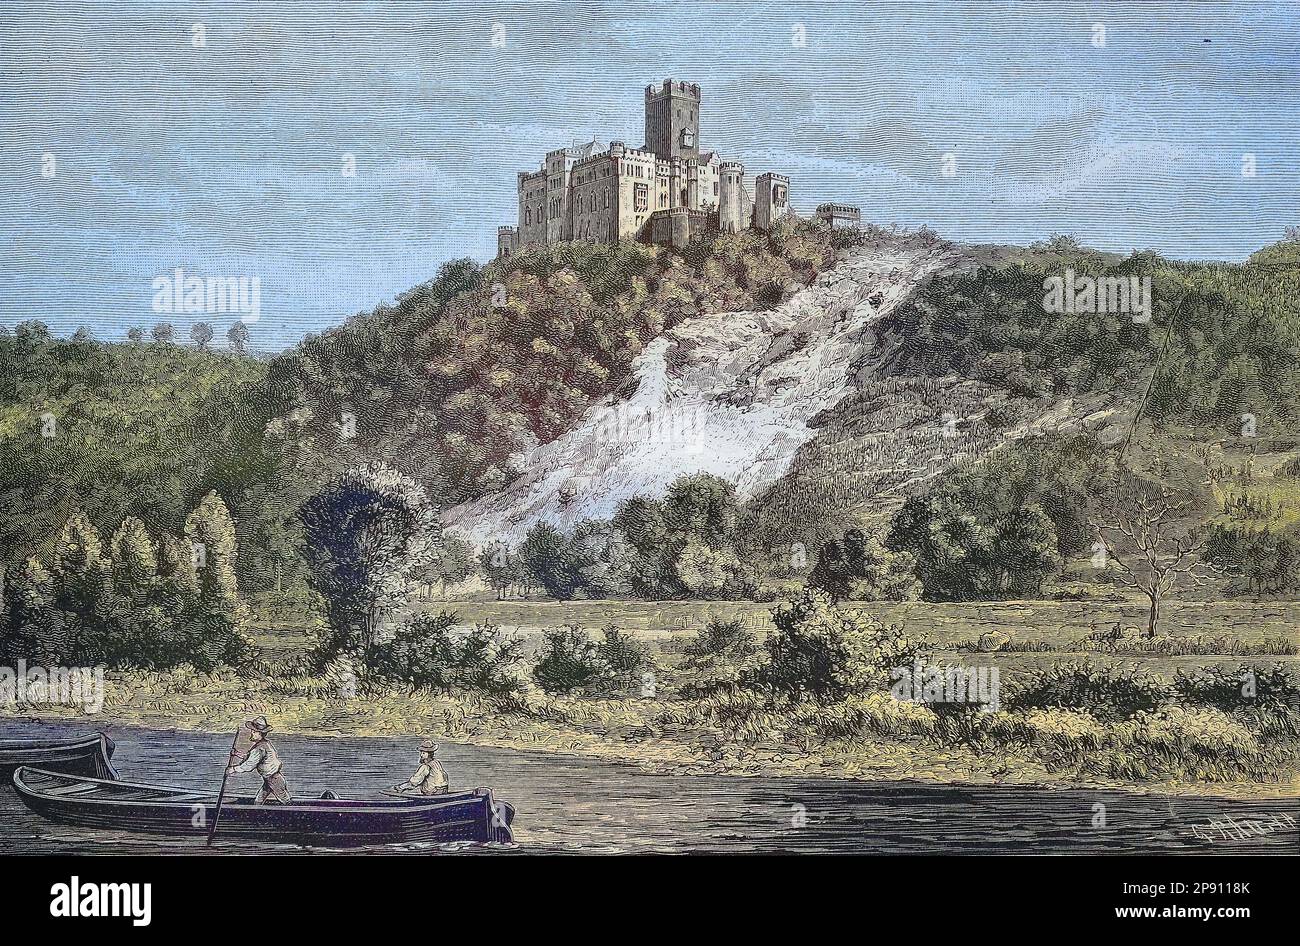 Burg Lahneck, ist eine mittelalterliche Festung in der Stadt Lahnstein in Rheinland-Pfalz, Deutschland, Ansicht aus dem 19. Jahrhundt, Historisch, digital restaurierte Reproduktion von einer Vorlage aus dem 19. Jahrhundert Banque D'Images